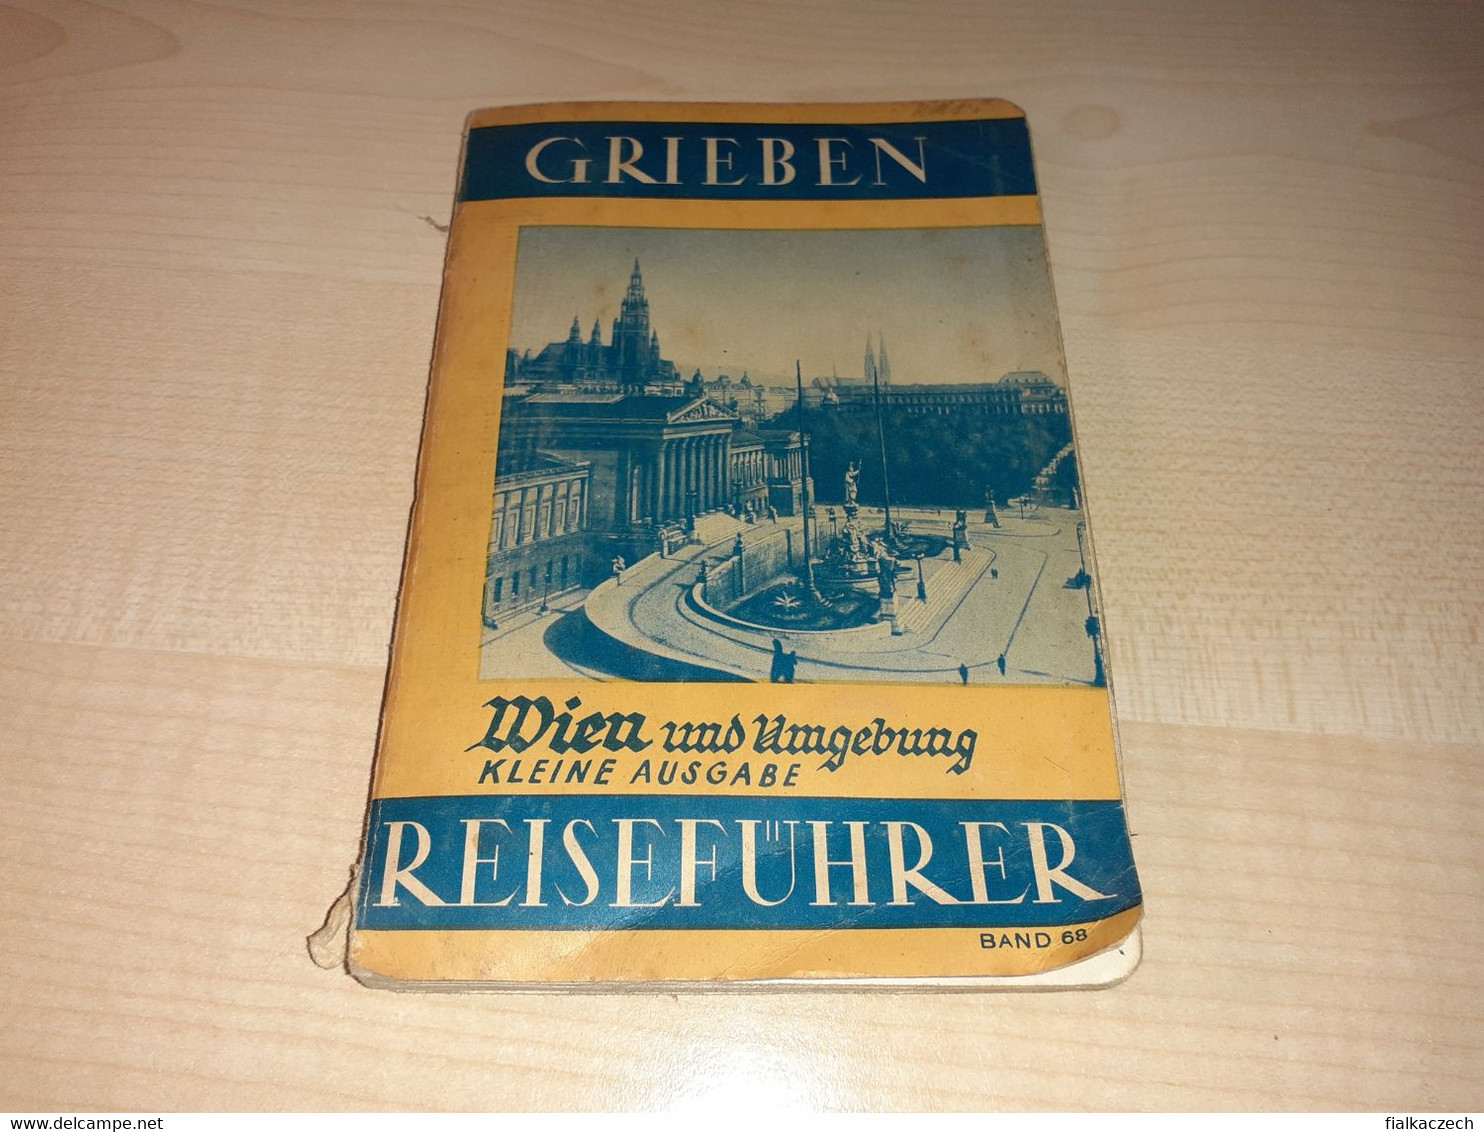 Grieben 1937, Wien Und Umgebung Kleine Ausgabe Reiseführer, Austria Tourist Guide, Tour Guide With Map, Karte - Oesterreich